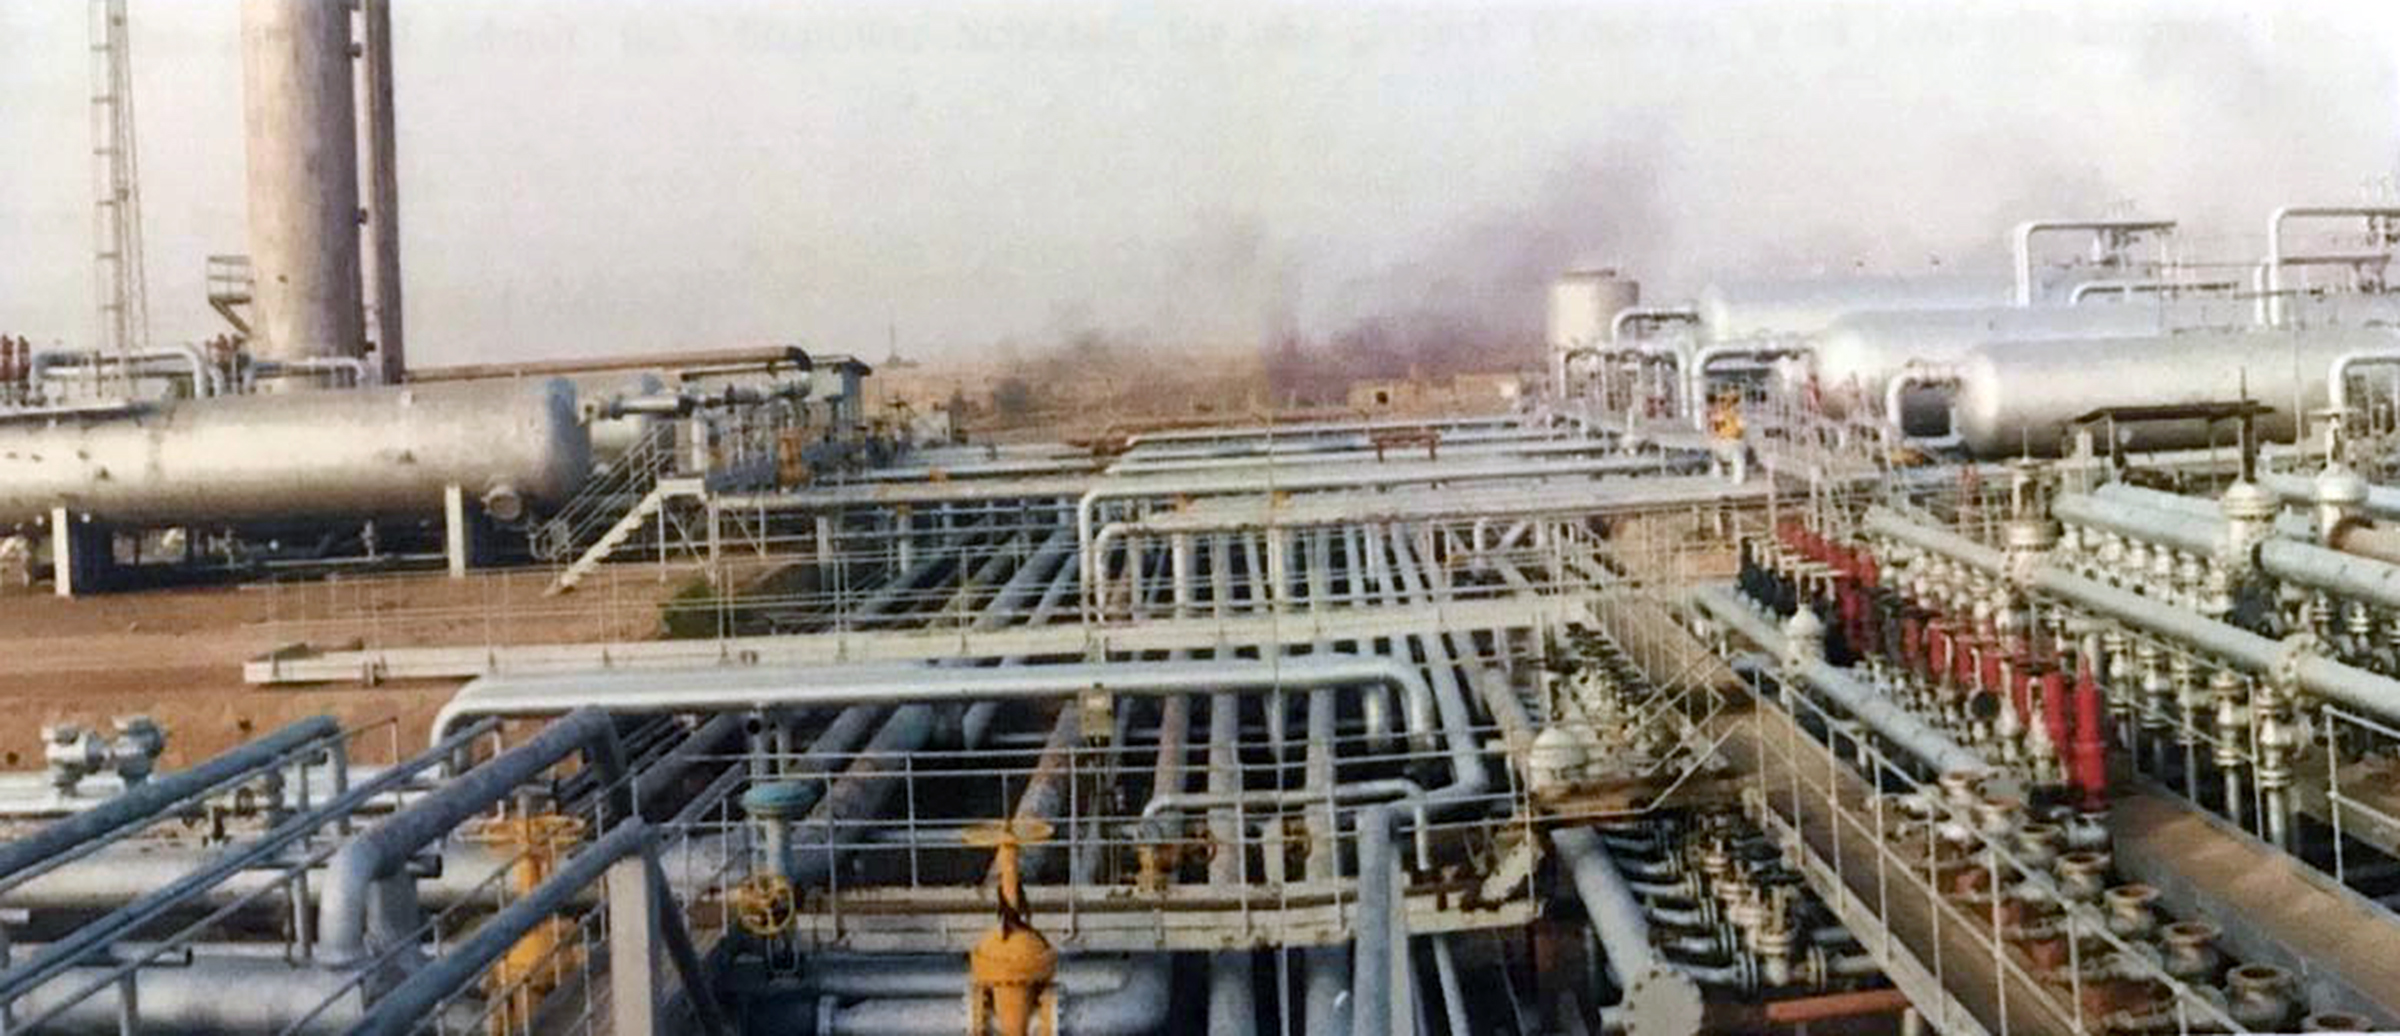 Oil & Gas Production Unit_Image-1 (002).jpg